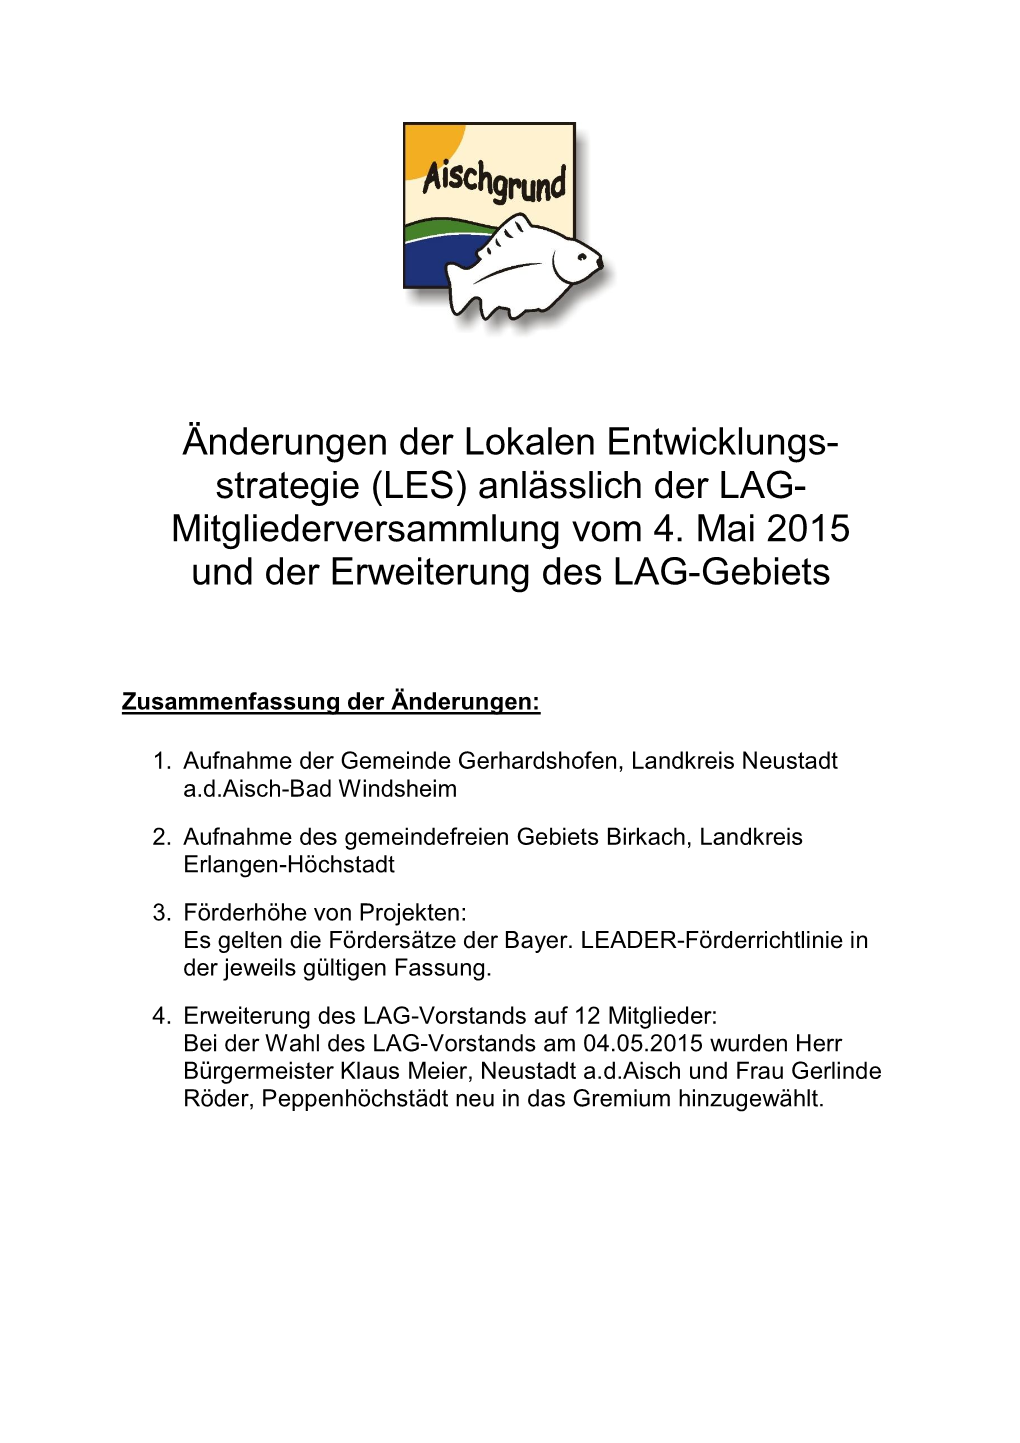 Änderungen Der Lokalen Entwicklungs- Strategie (LES) Anlässlich Der LAG- Mitgliederversammlung Vom 4